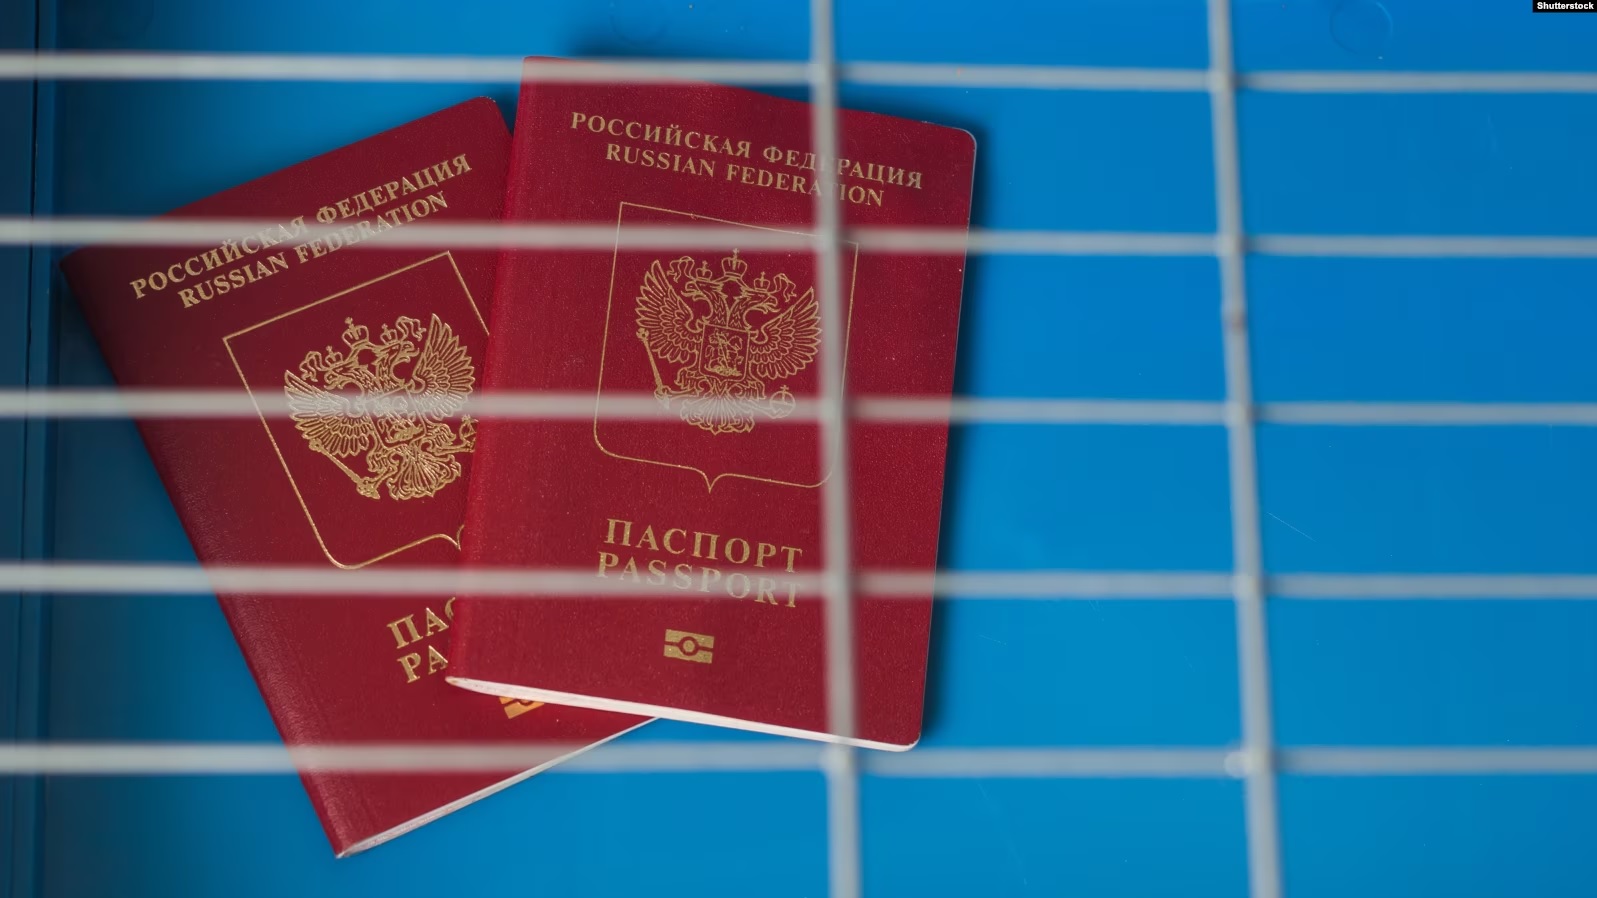 Pasaporte ruse të mbyllura në një kafaz.